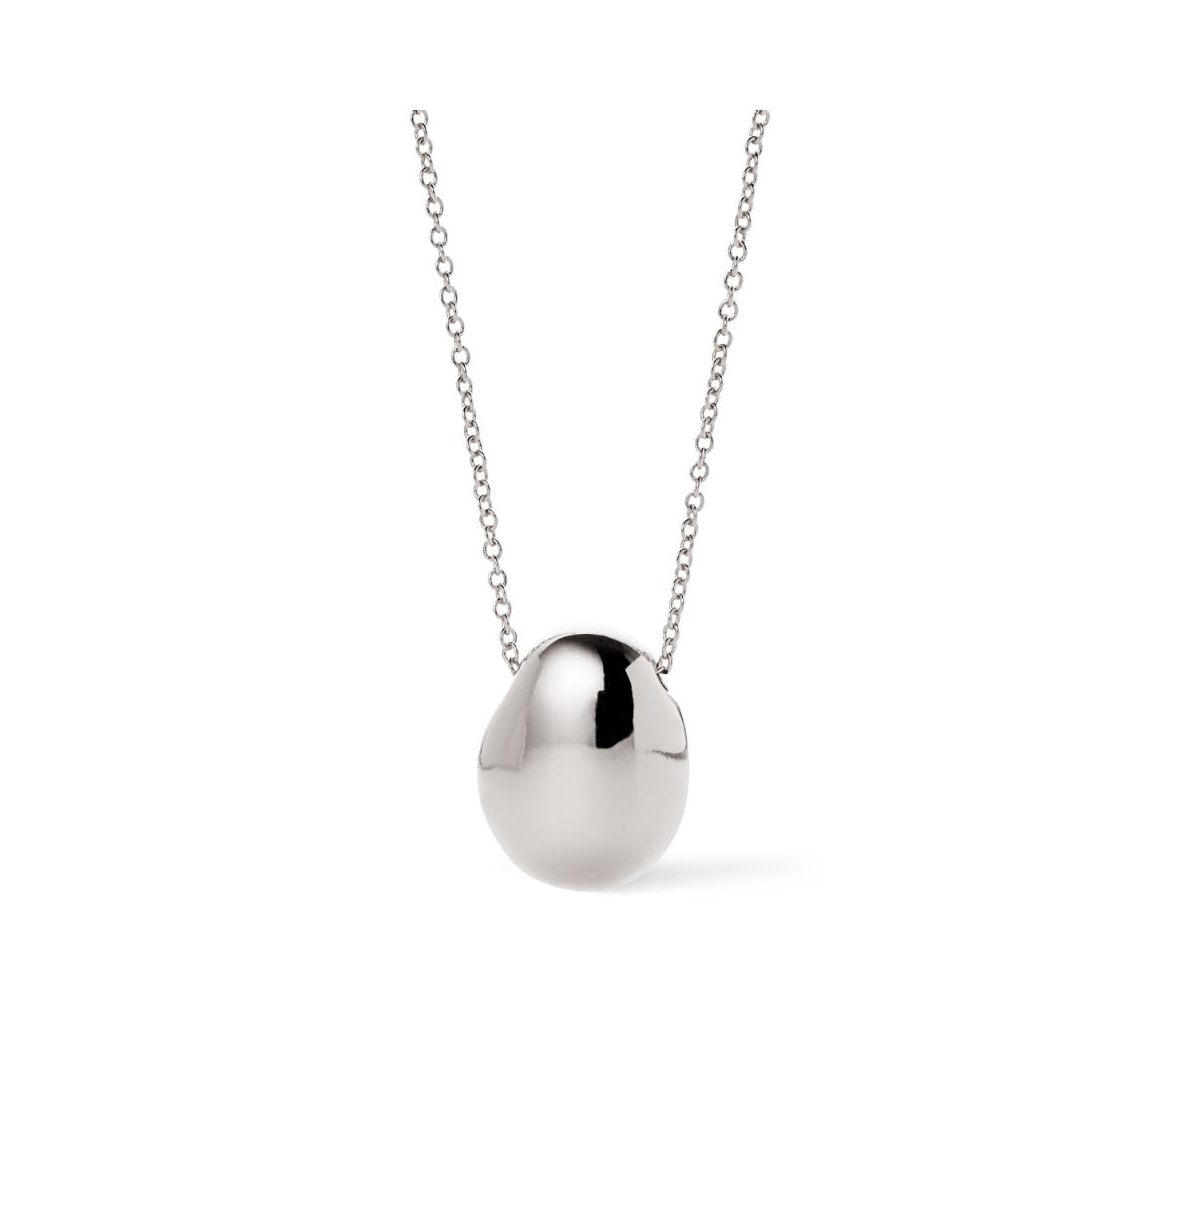 Silver Pendant Necklace - Pebble Mini Silver - Silver